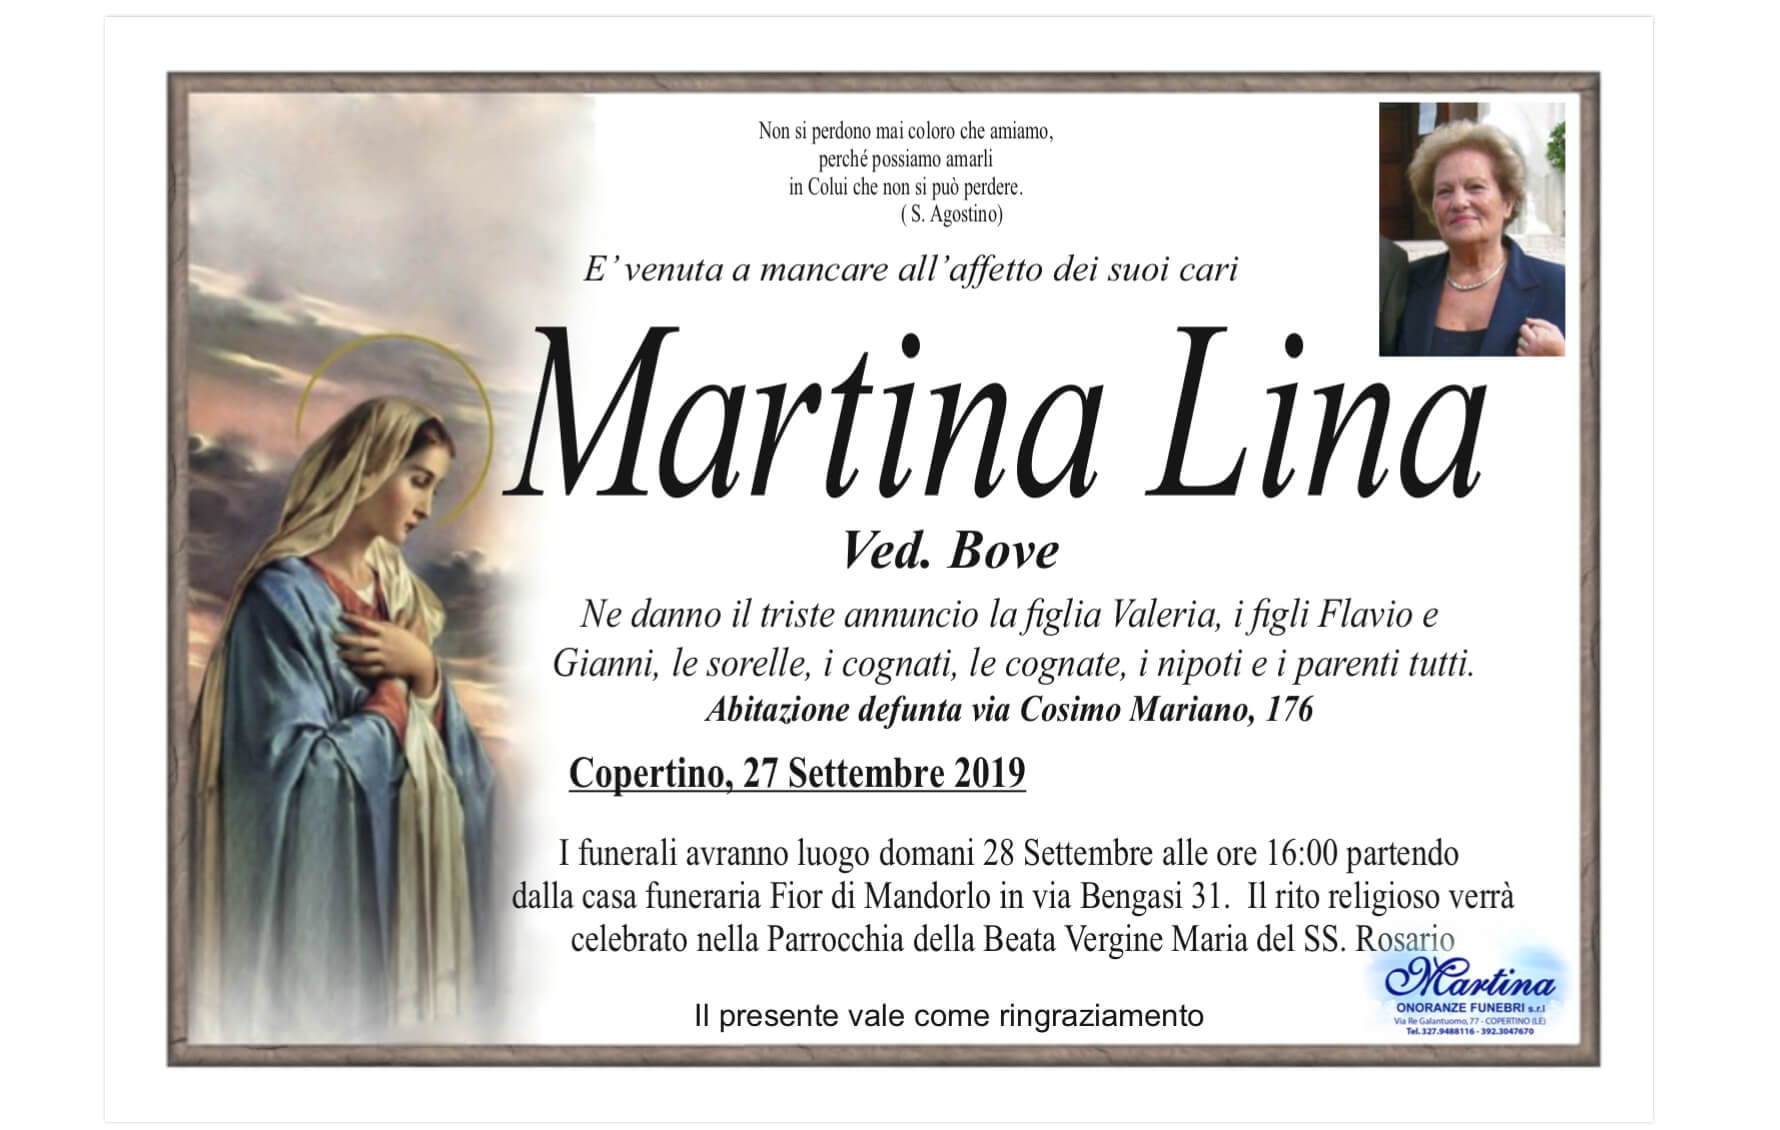 Lina Martina